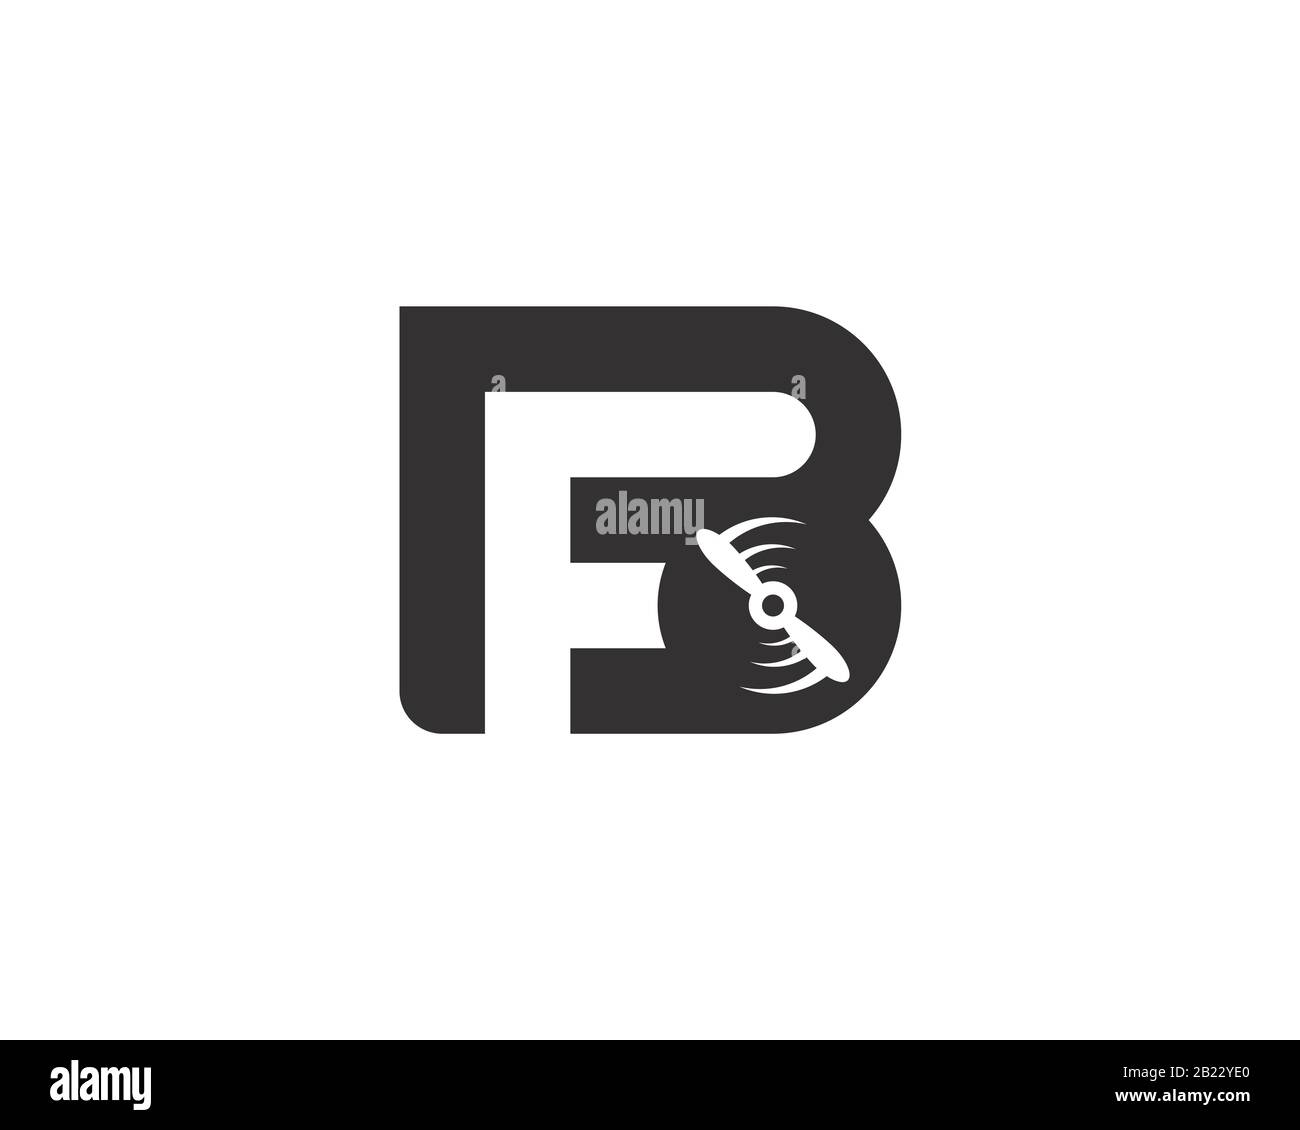 monogram anagram lettermark logo of letter B F plane propeller spinning Stock Vector